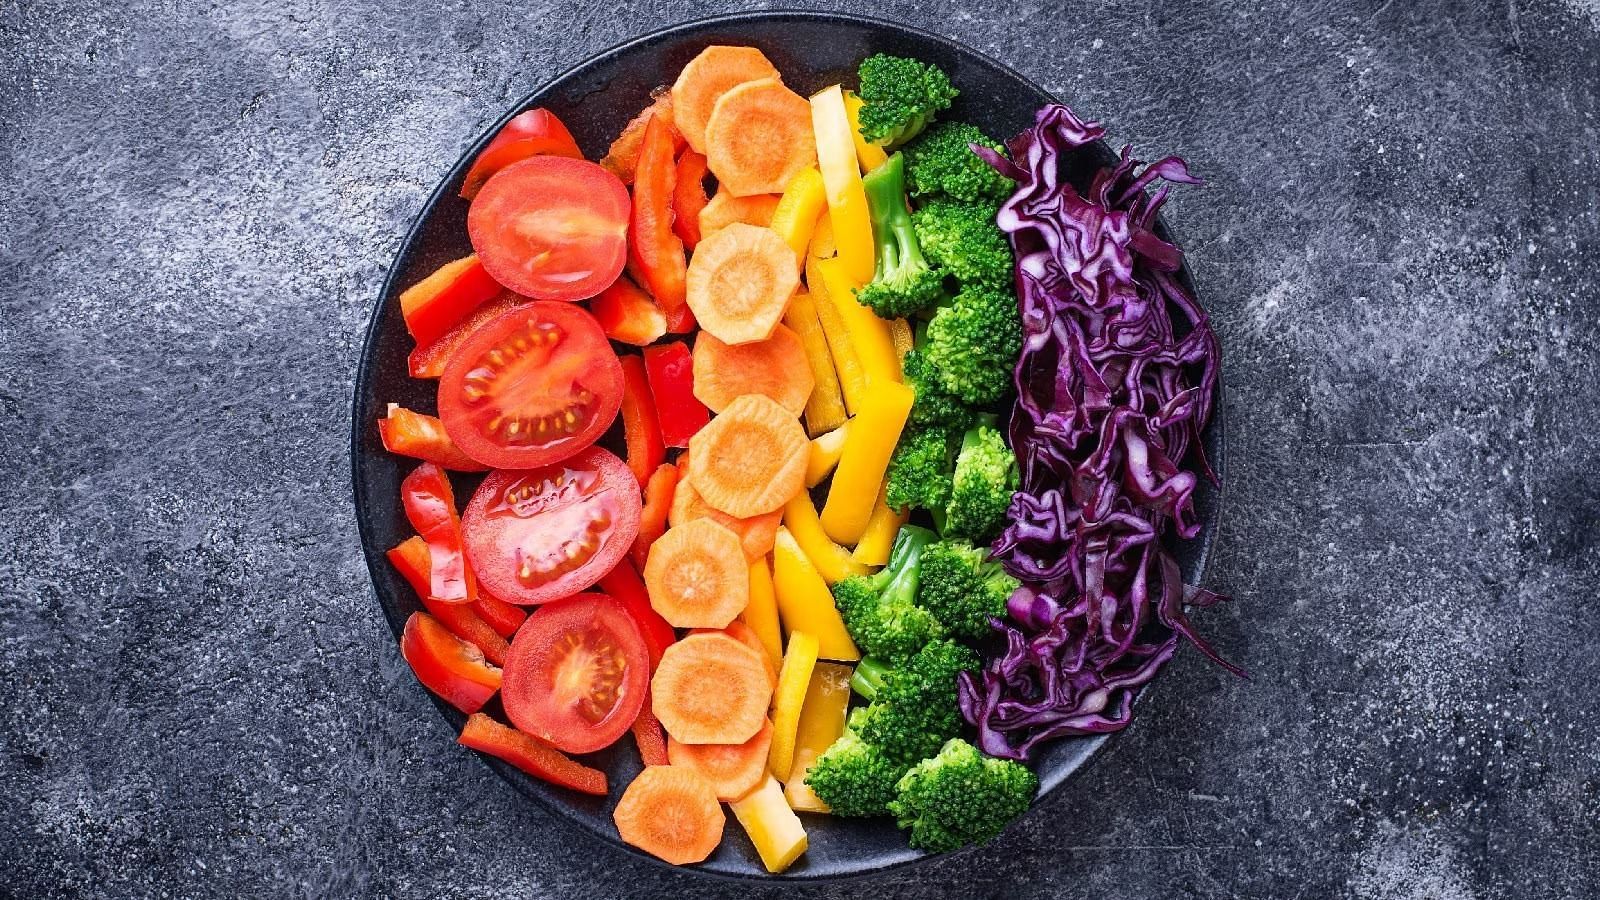 Rainbow diet (Image via Healthshots)